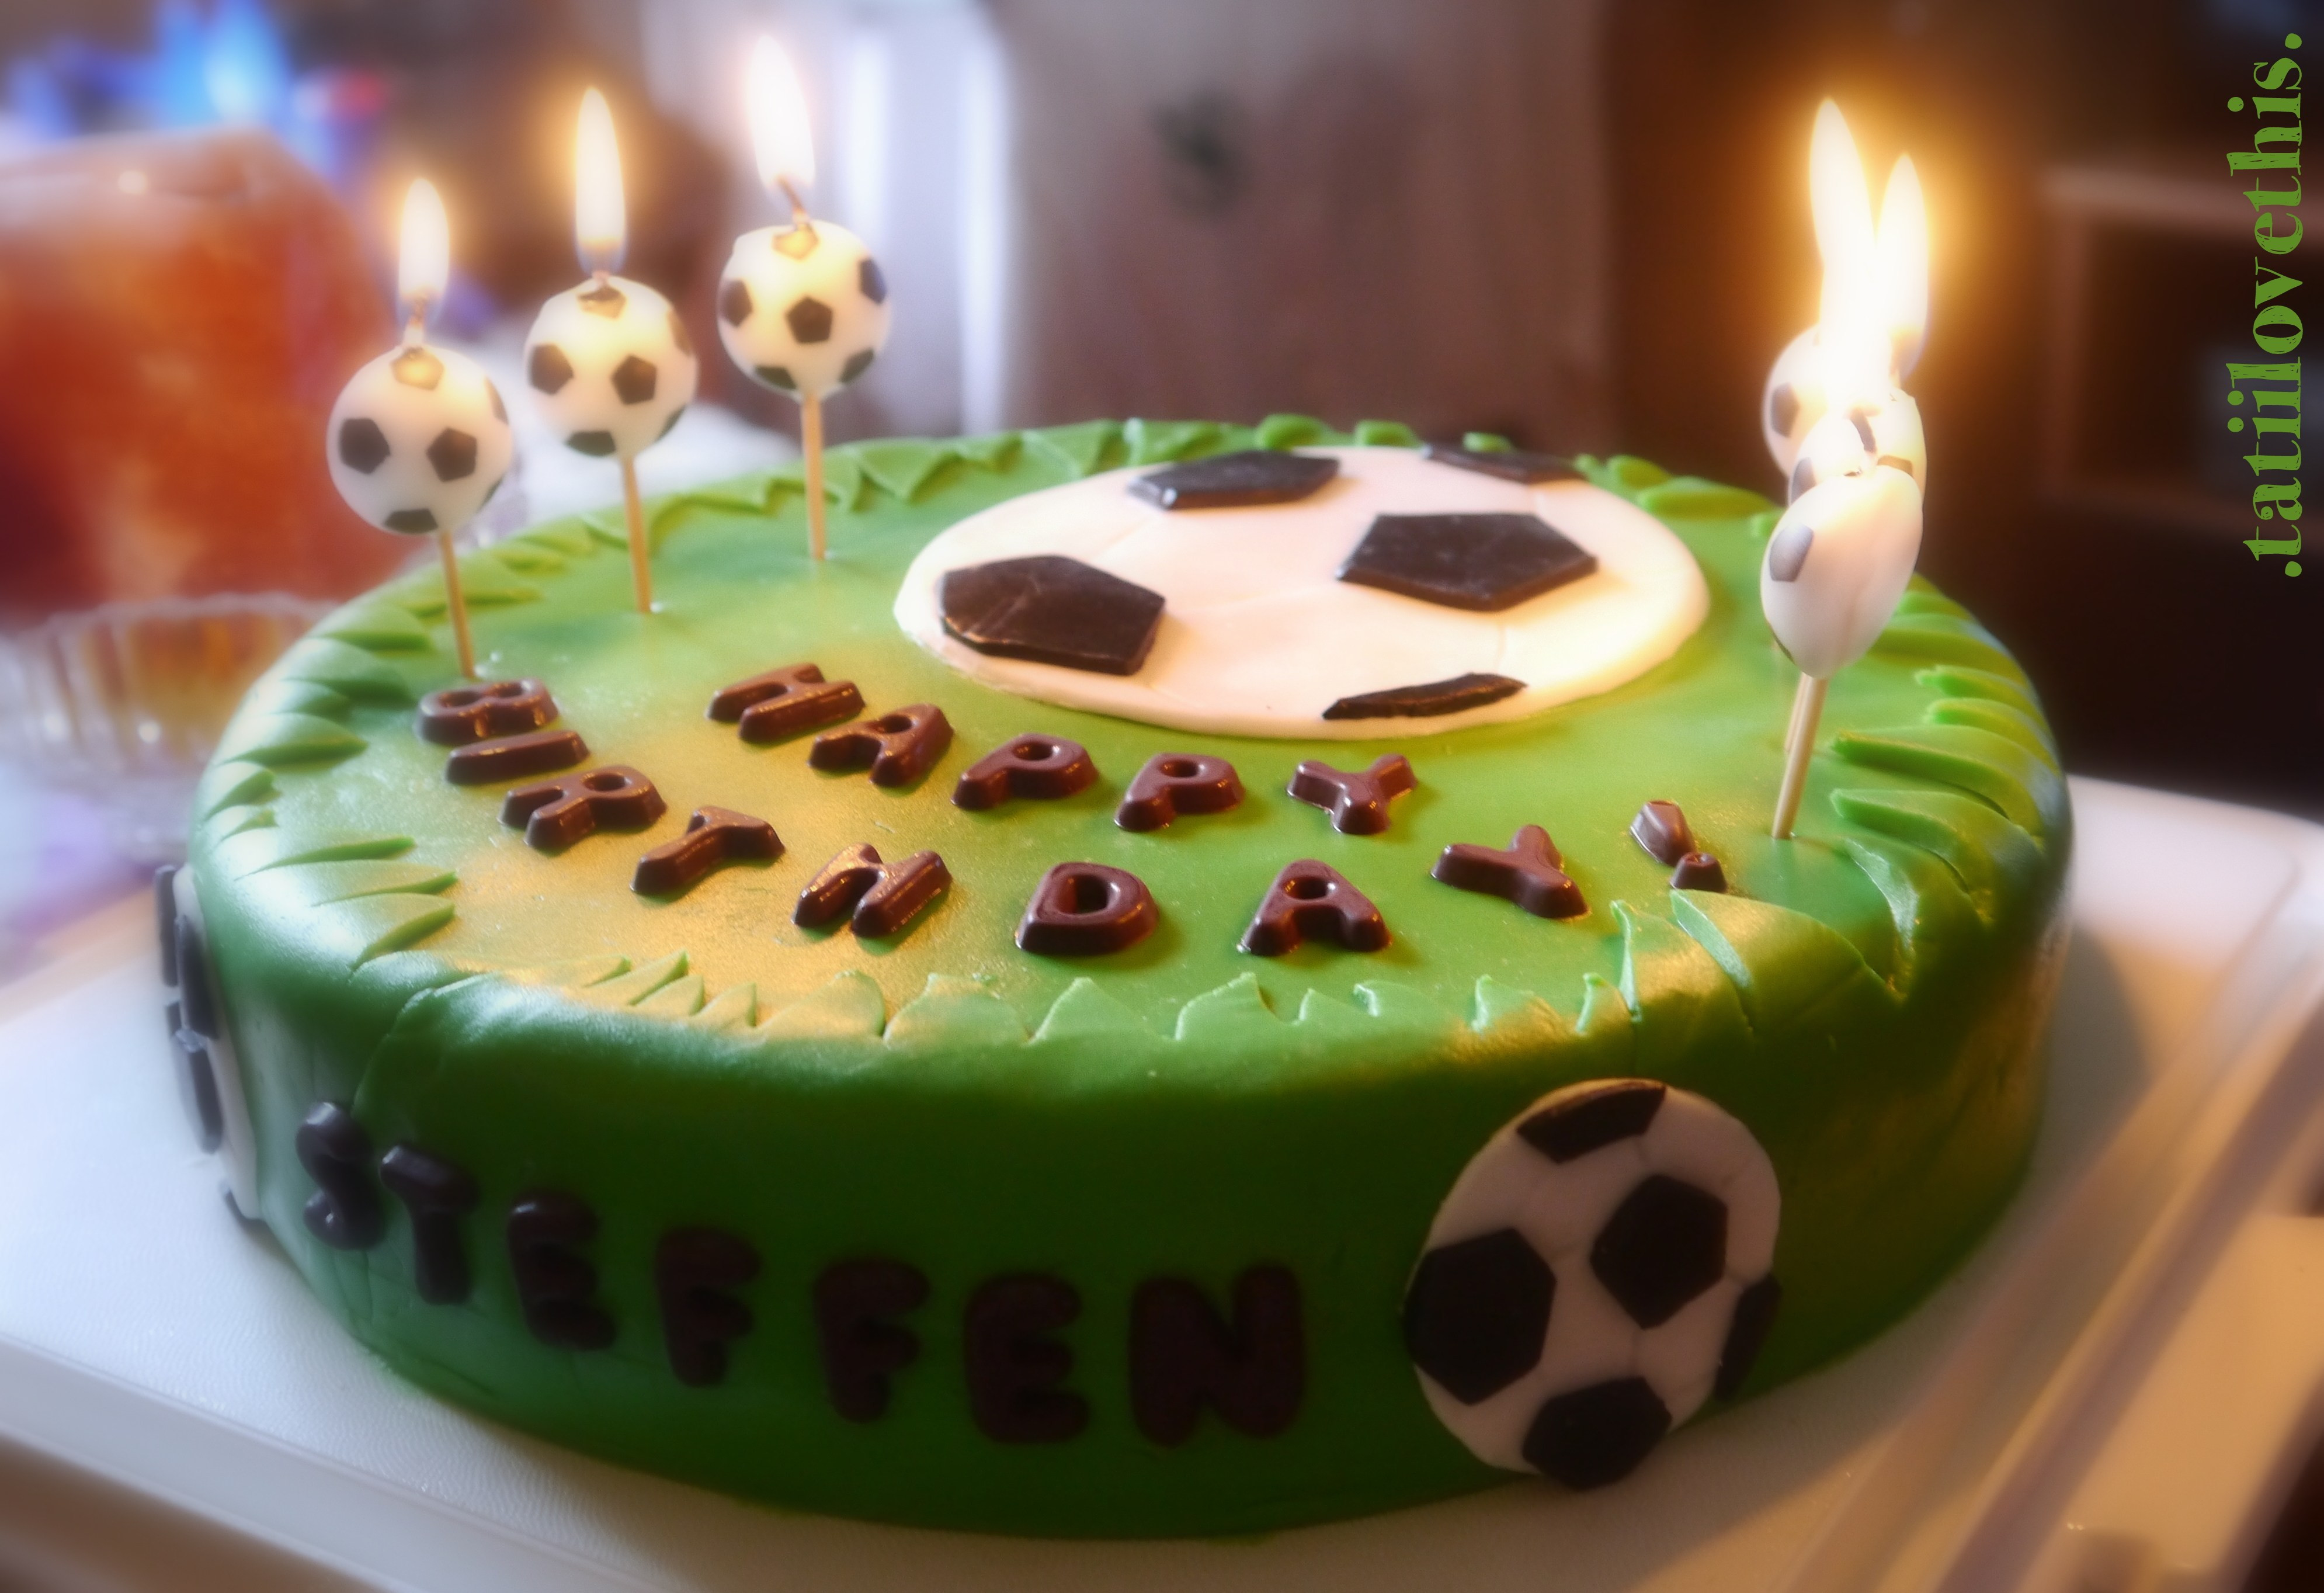 Geburtstagstorte Fußball
 Zweistöckige Geburtstagstorte Selber Machen Geburtstagstorte